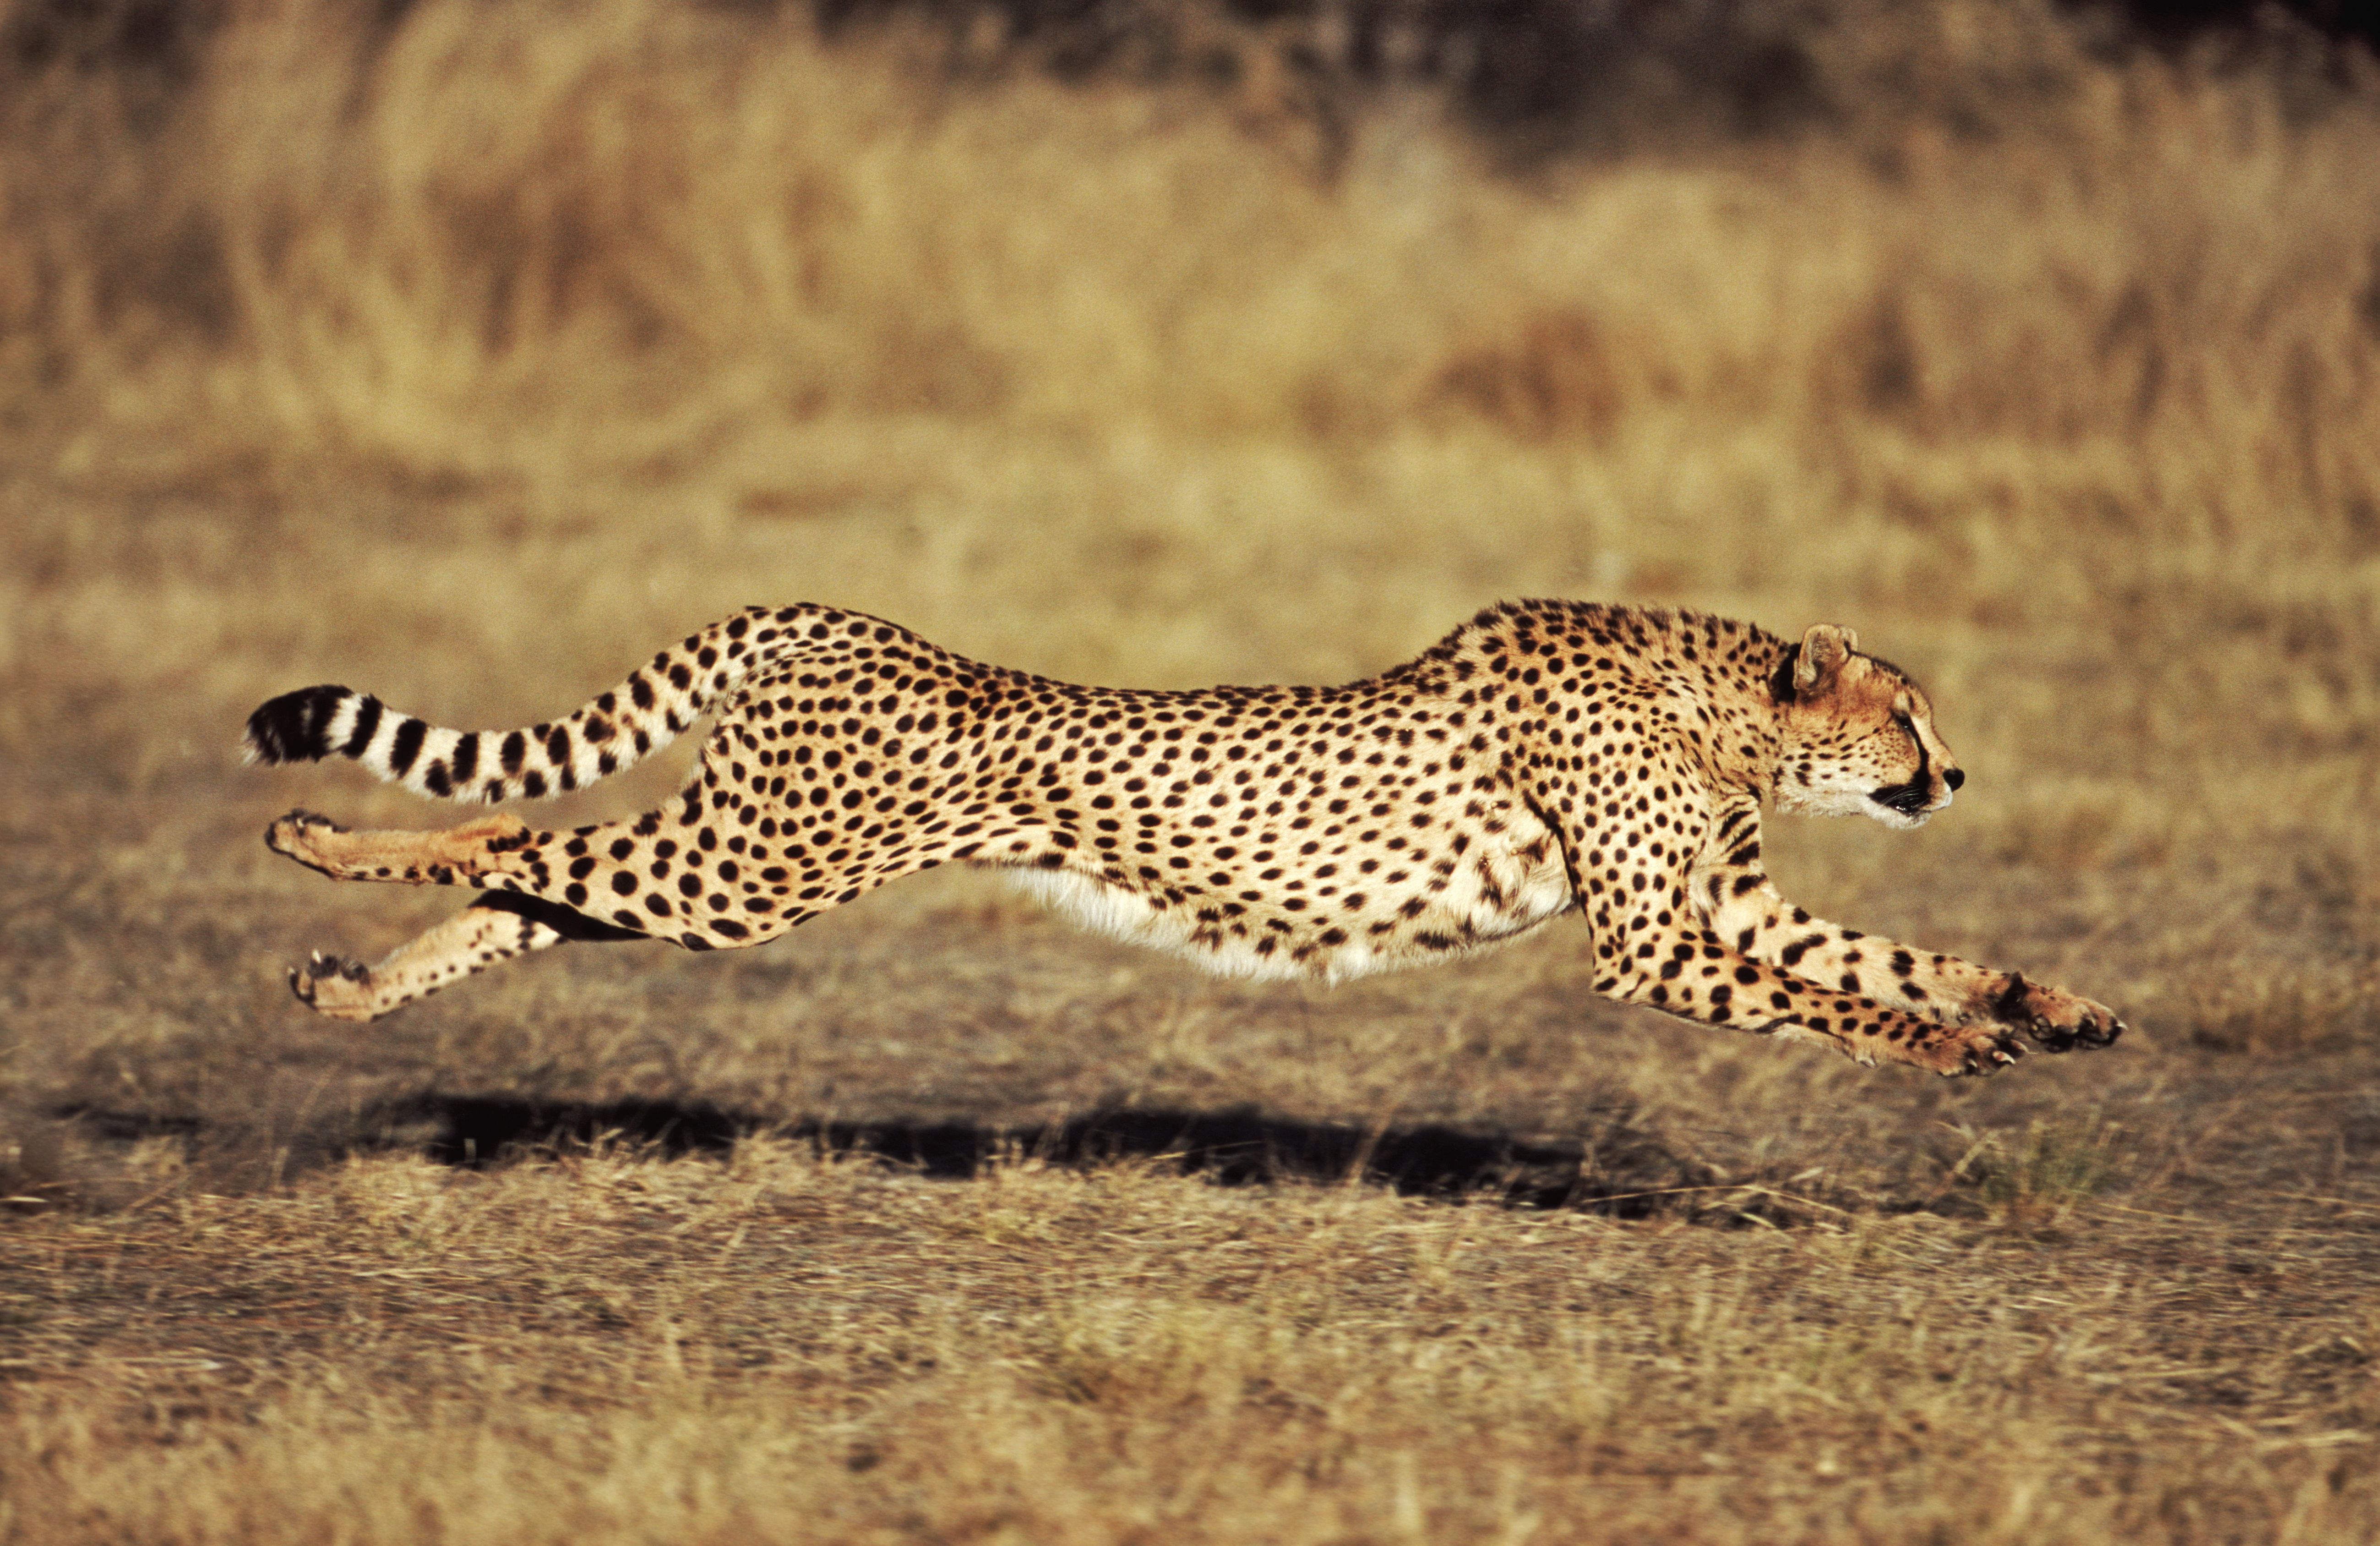 Can a cheetah run 80 mph?